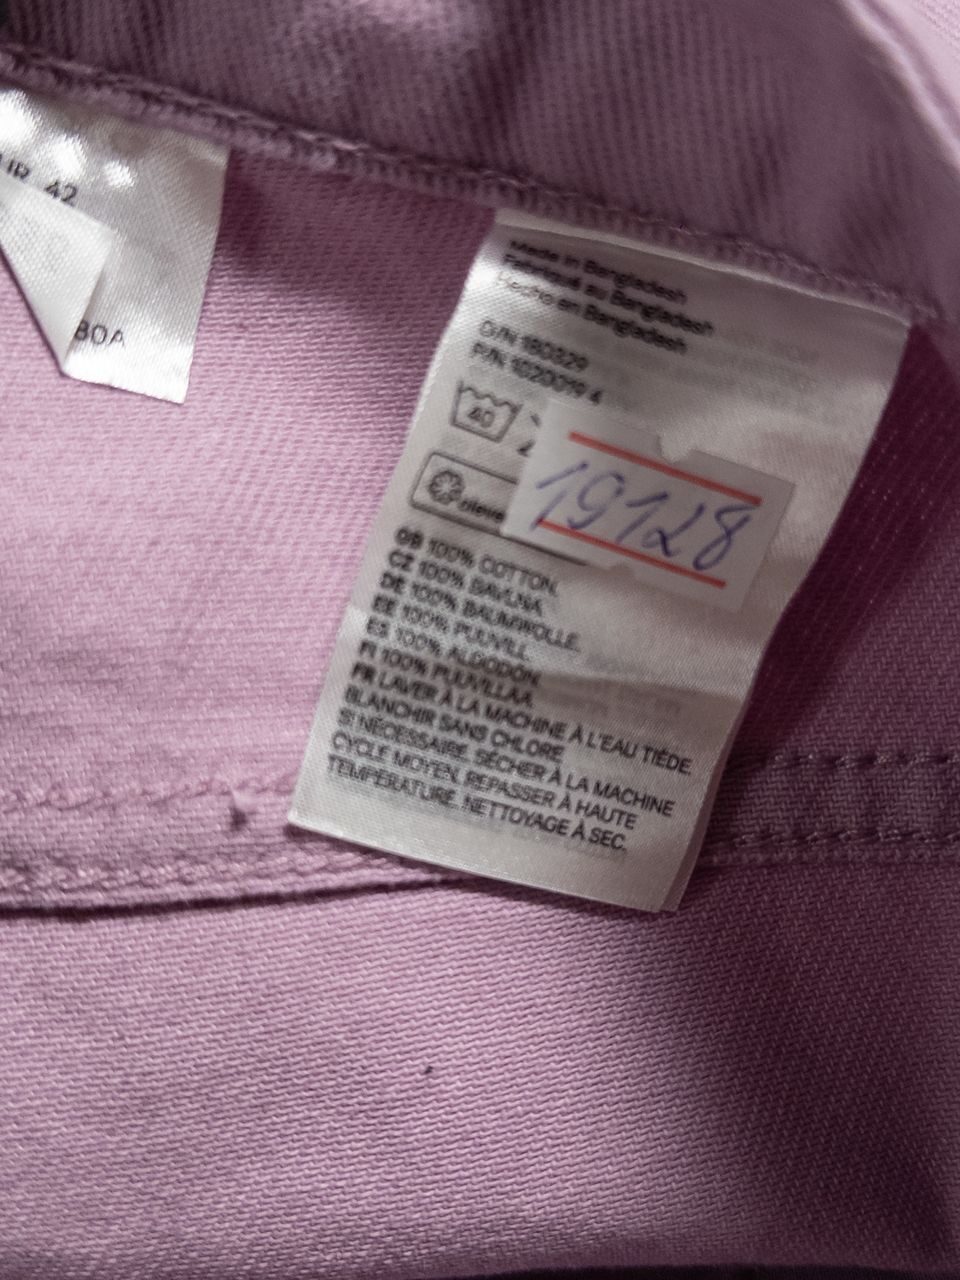 Мешковатые джинсы с высокой талией цвет светло-фиолетовый размер EUR 42 (rus 48) H&M